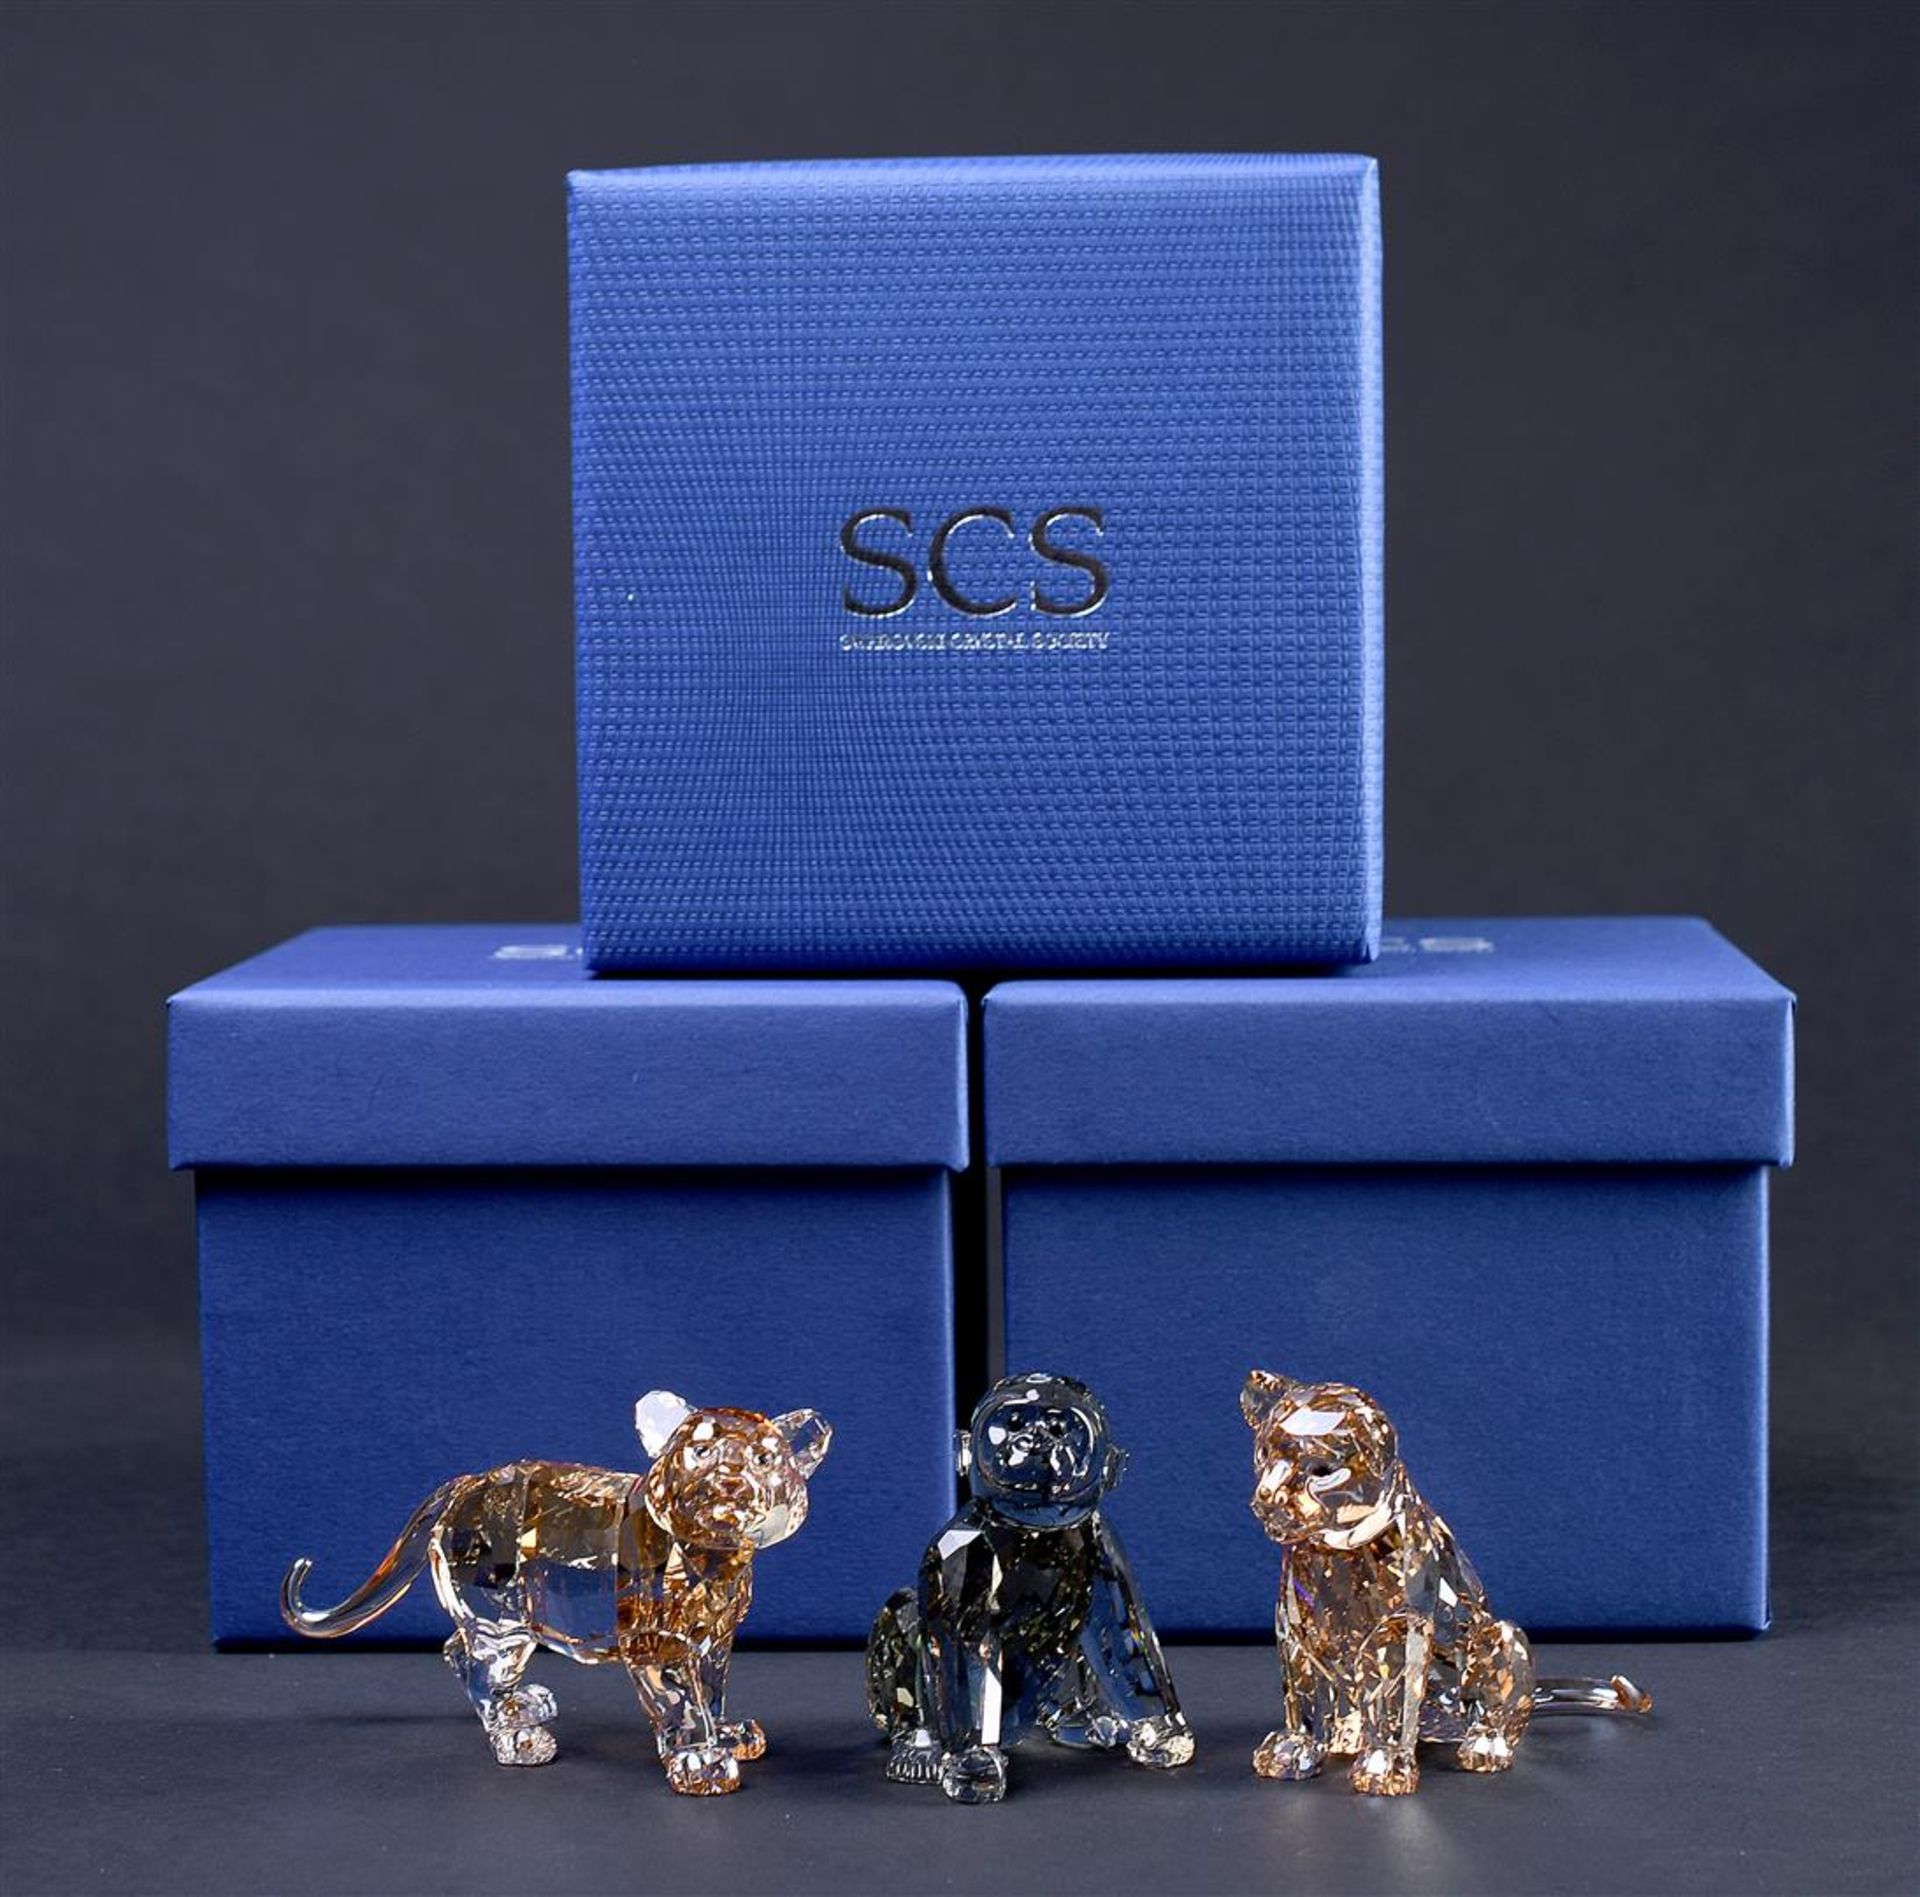 Swarovski SCS, three figures, 1051686, 5173246 & 955440. In original box. - Image 5 of 5